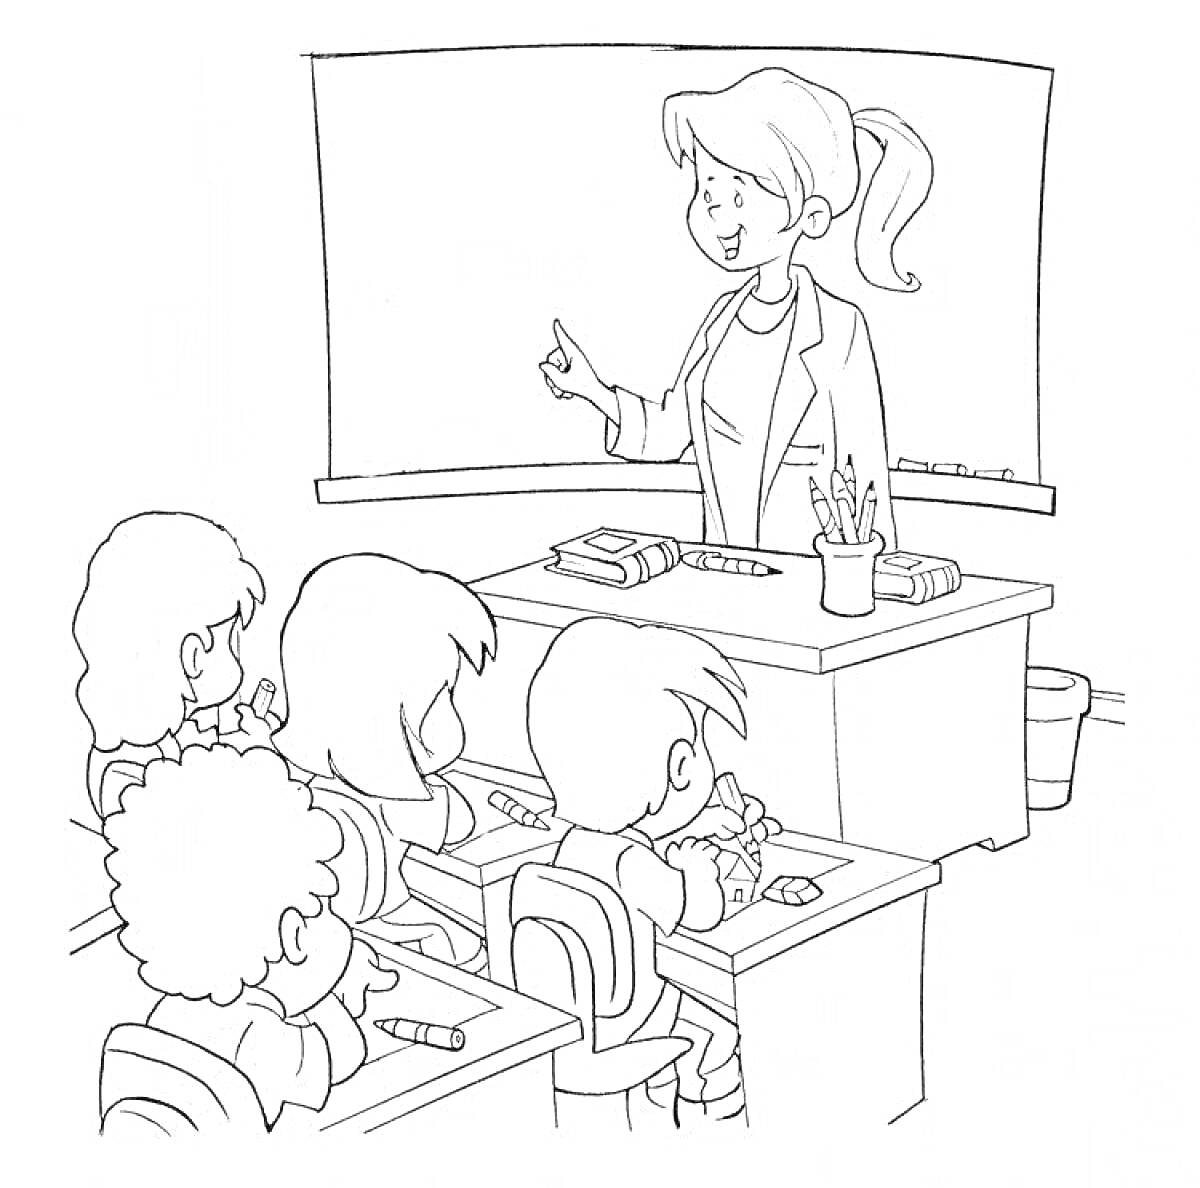 Раскраска Учитель у доски в классе с учениками, учащиеся сидят за партами, доска, стол учителя с канцелярскими принадлежностями